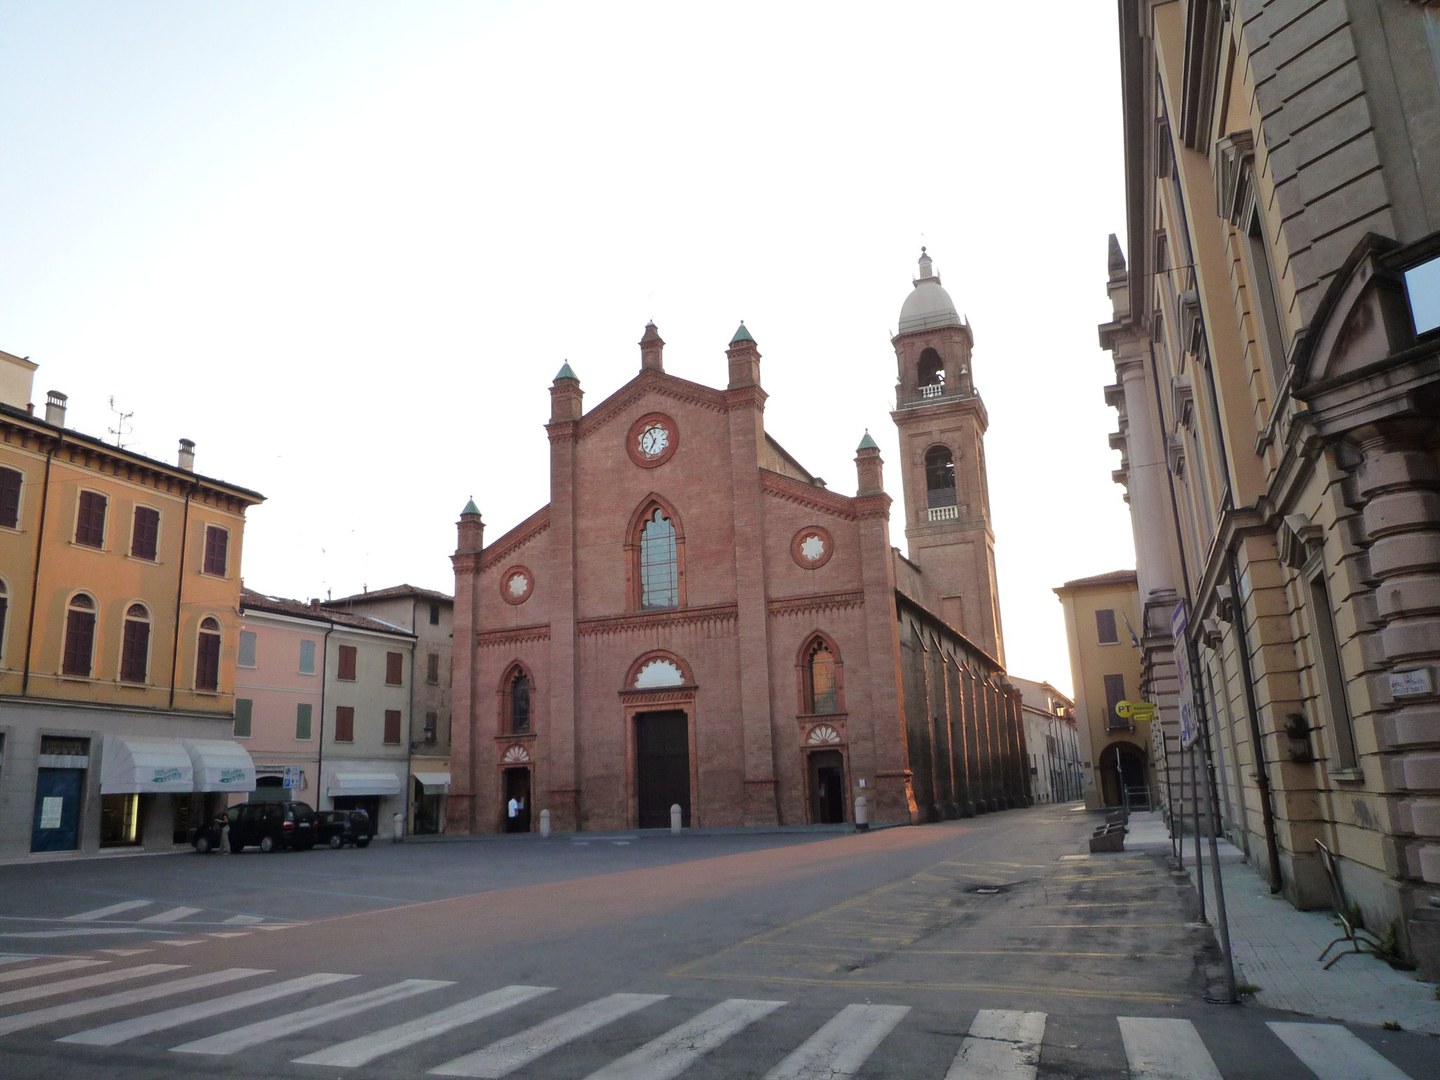 Santa Maria Maggiore church - Duomo in Mirandola